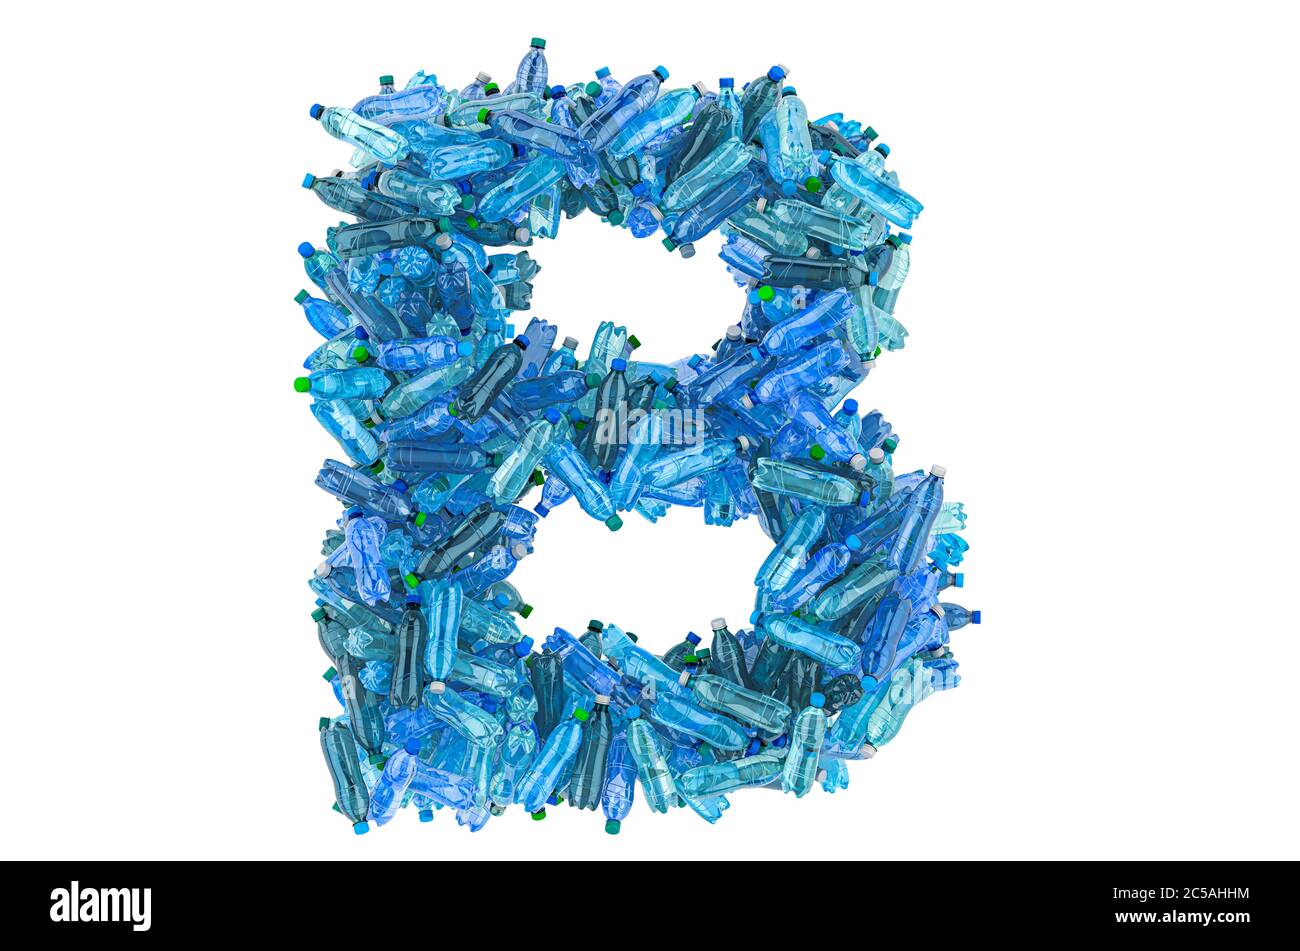 Lettre B provenant de bouteilles d'eau en plastique, rendu 3D isolé sur fond blanc Banque D'Images